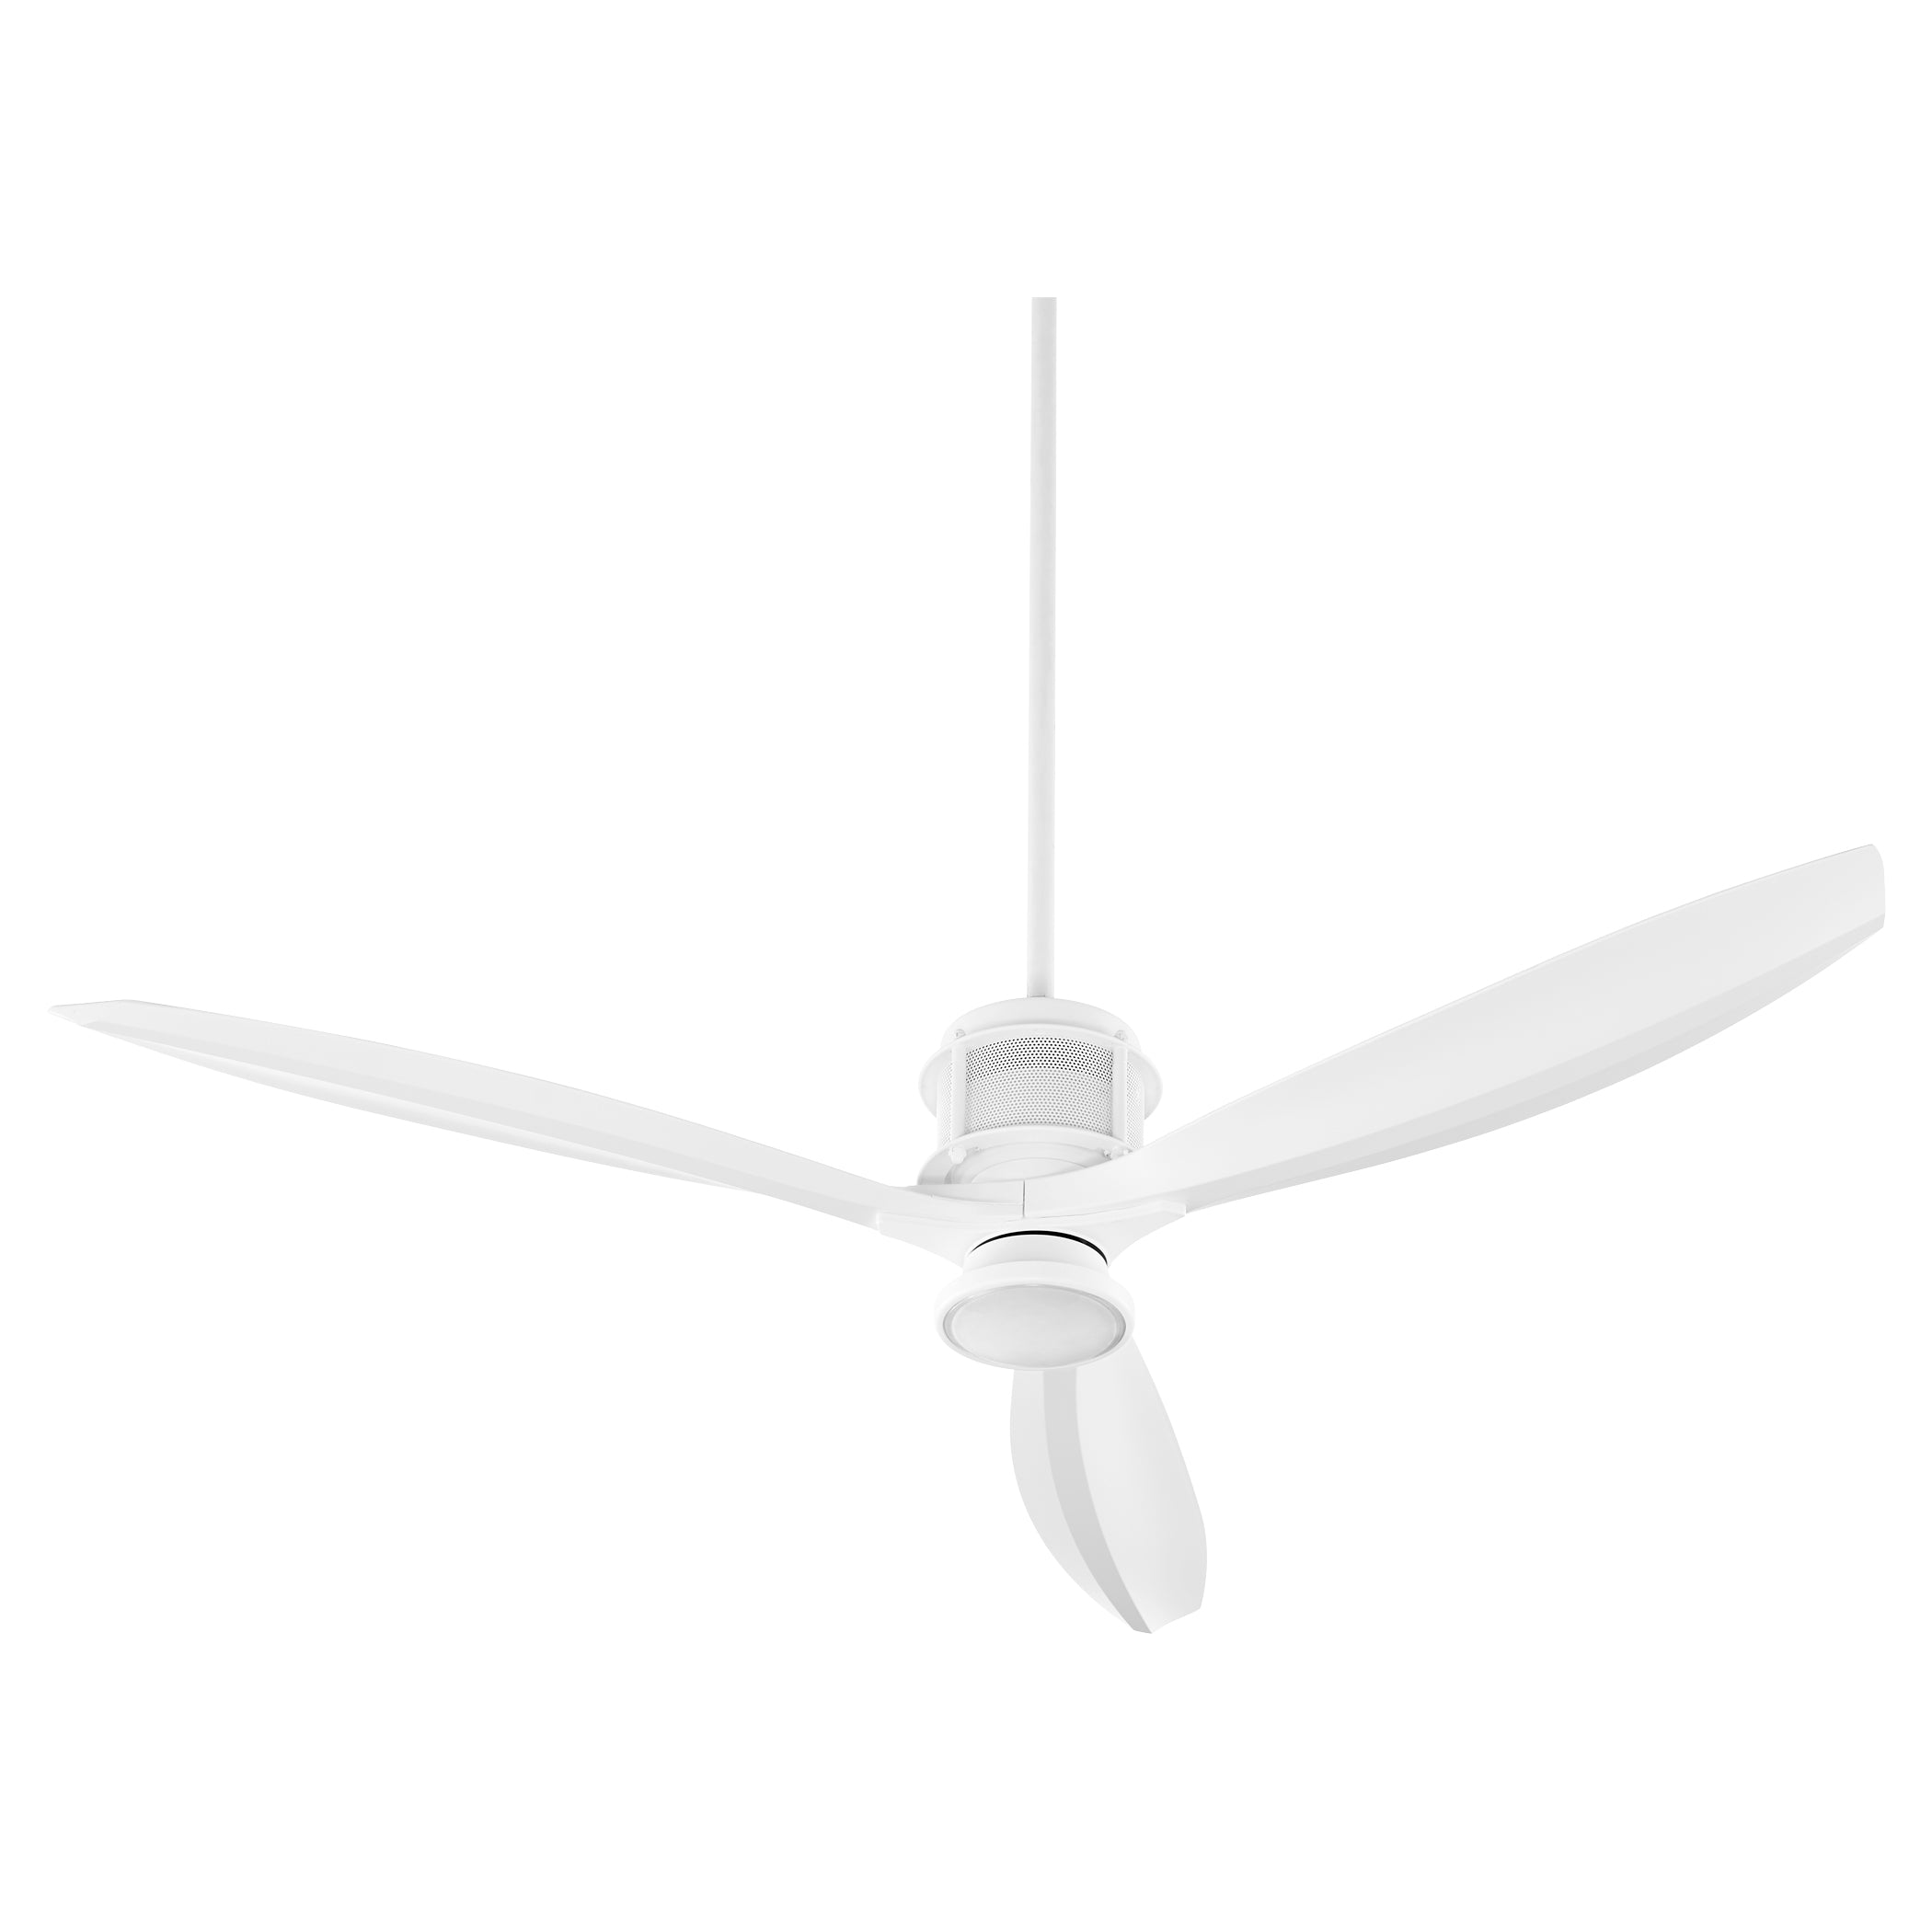 Oxygen Propel 3-106-6 Ceiling Fan - White